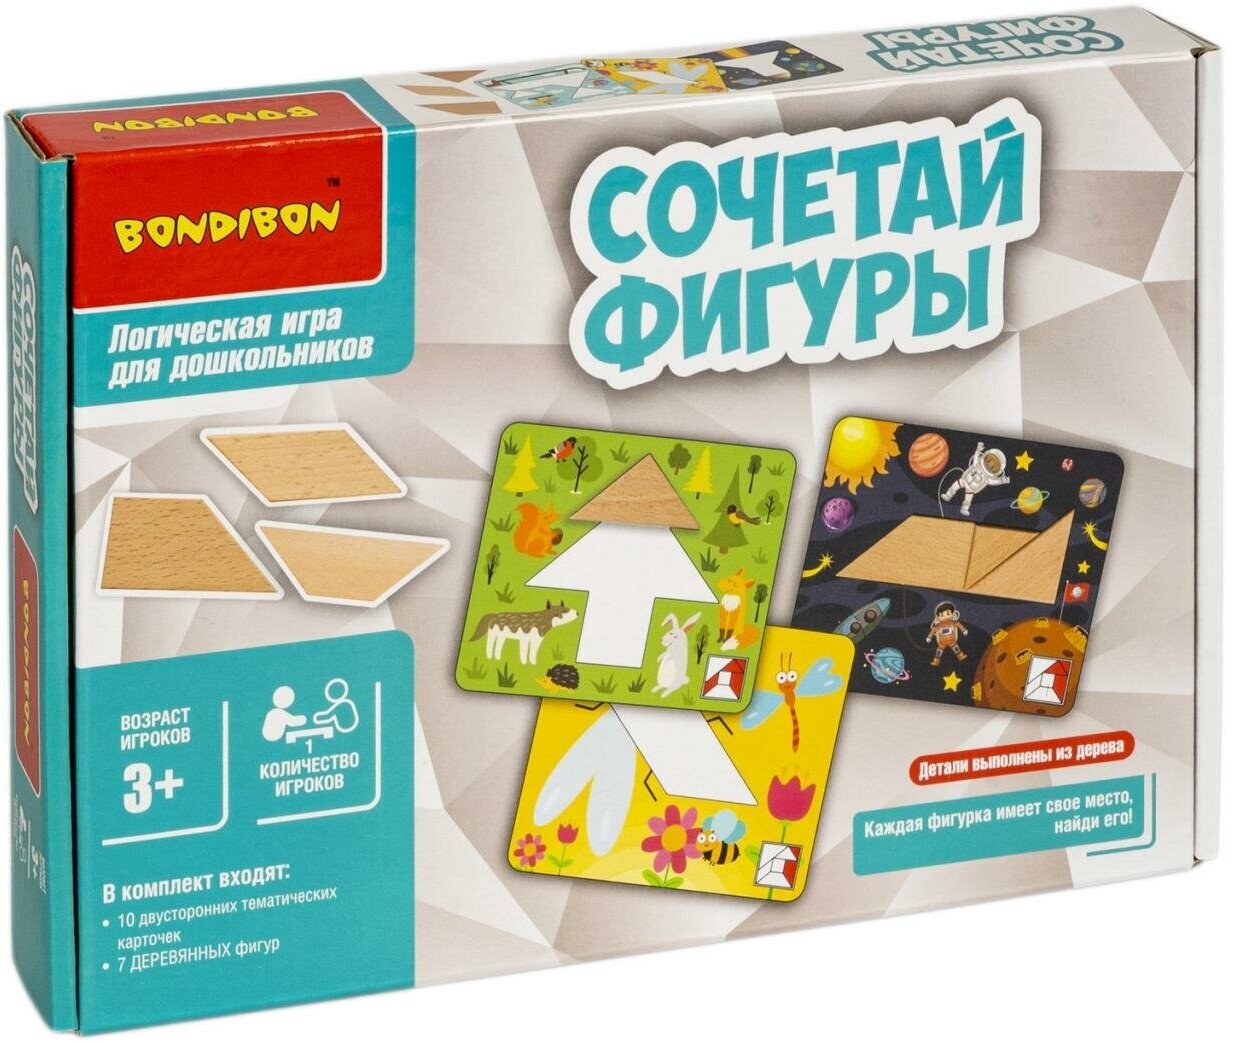 Обучающие игры для дошкольников Bondibon "сочетай фигуры", BOX